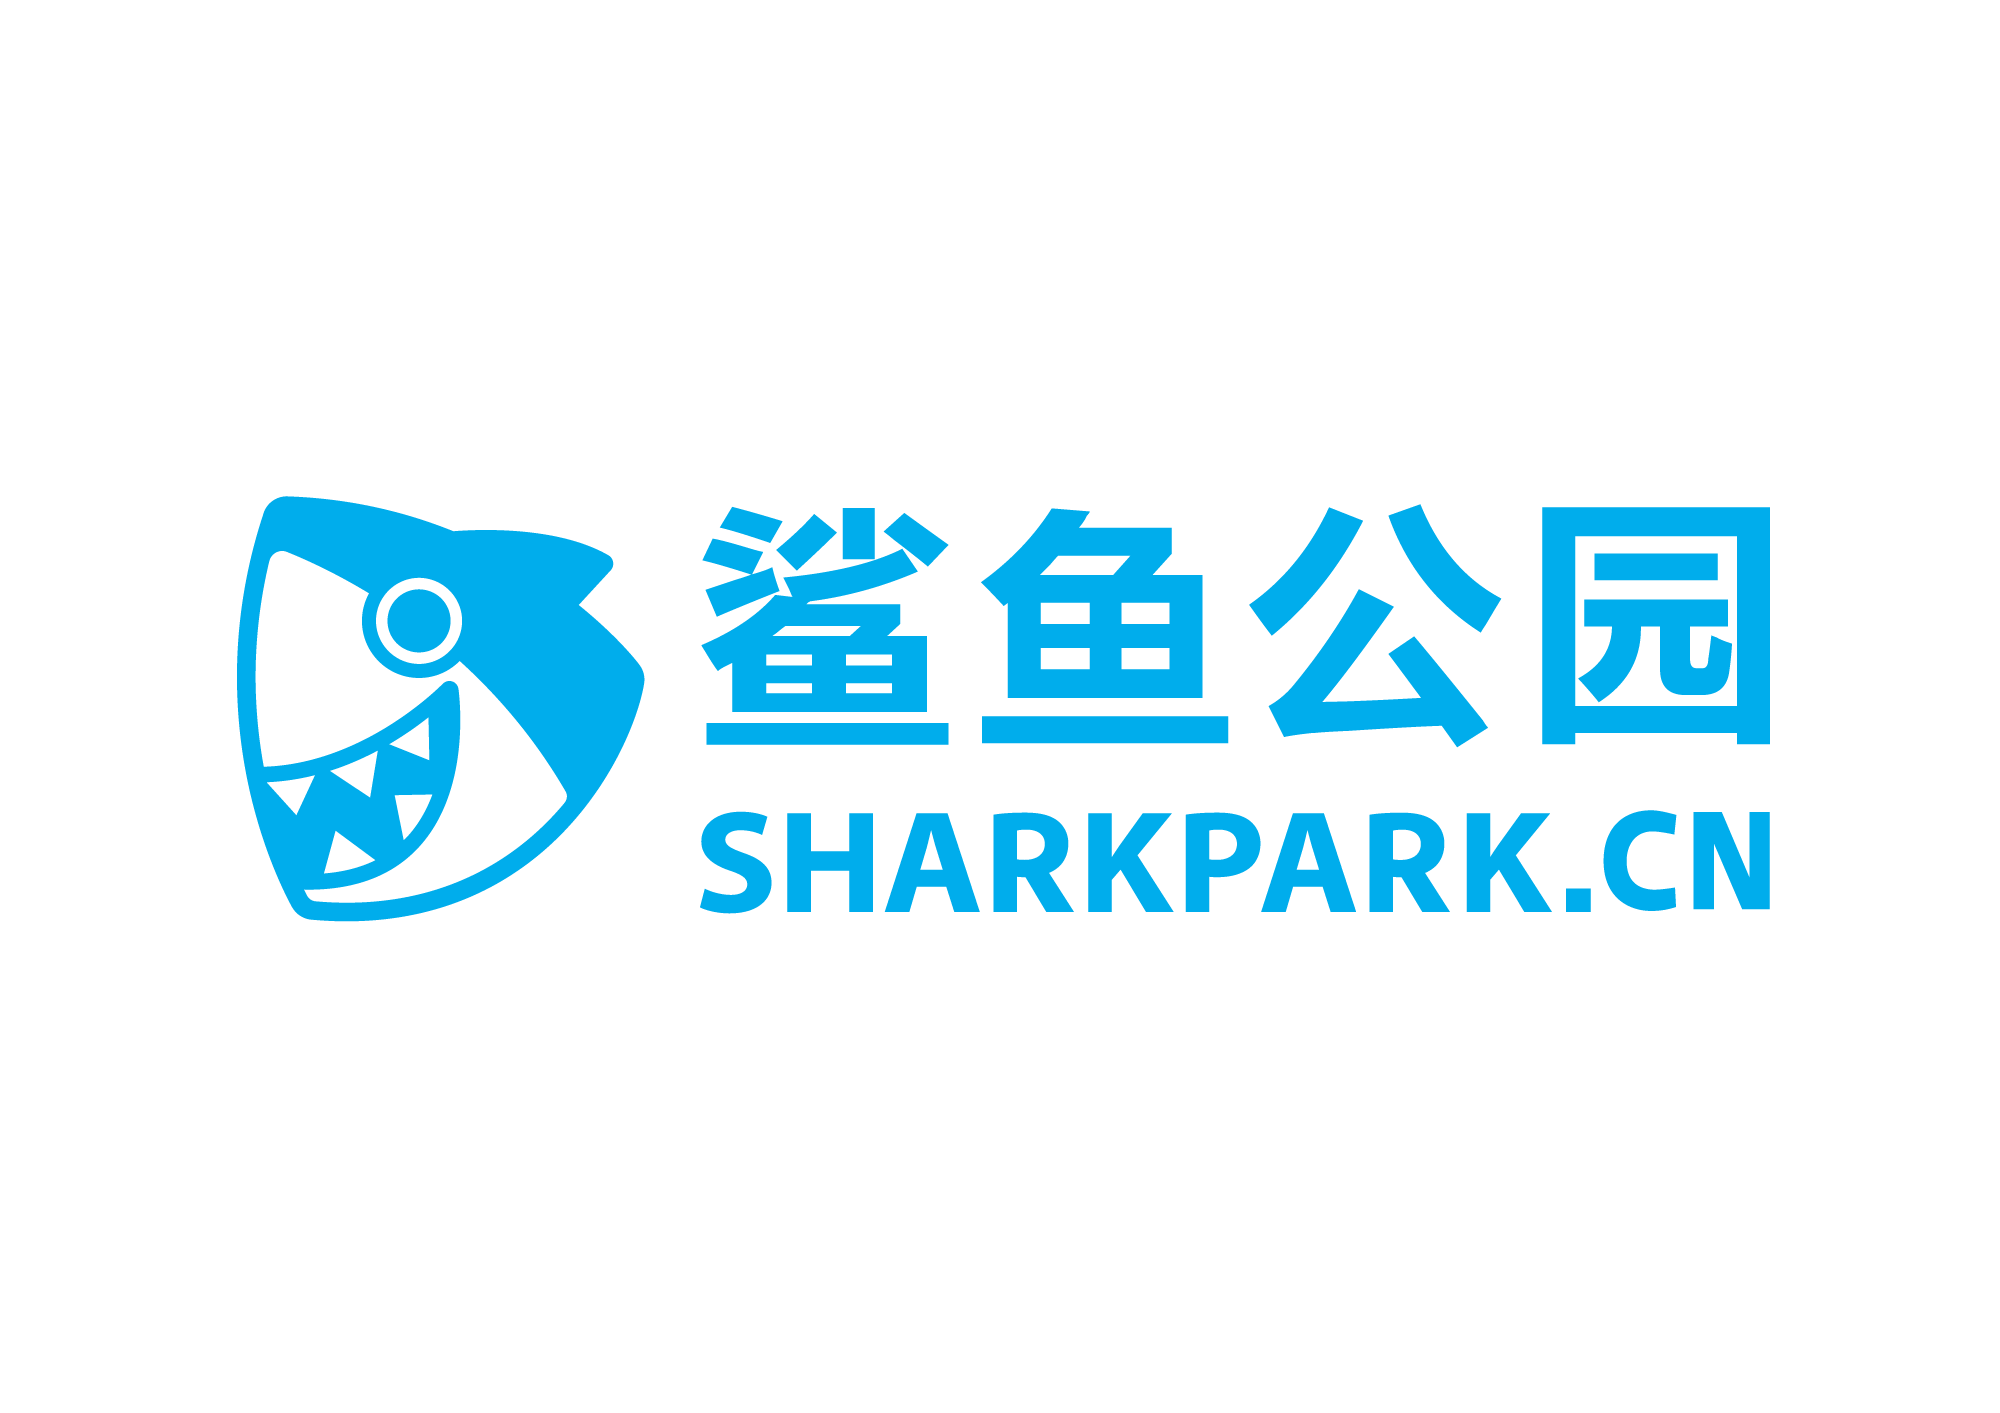 鲨鱼公园儿童大学